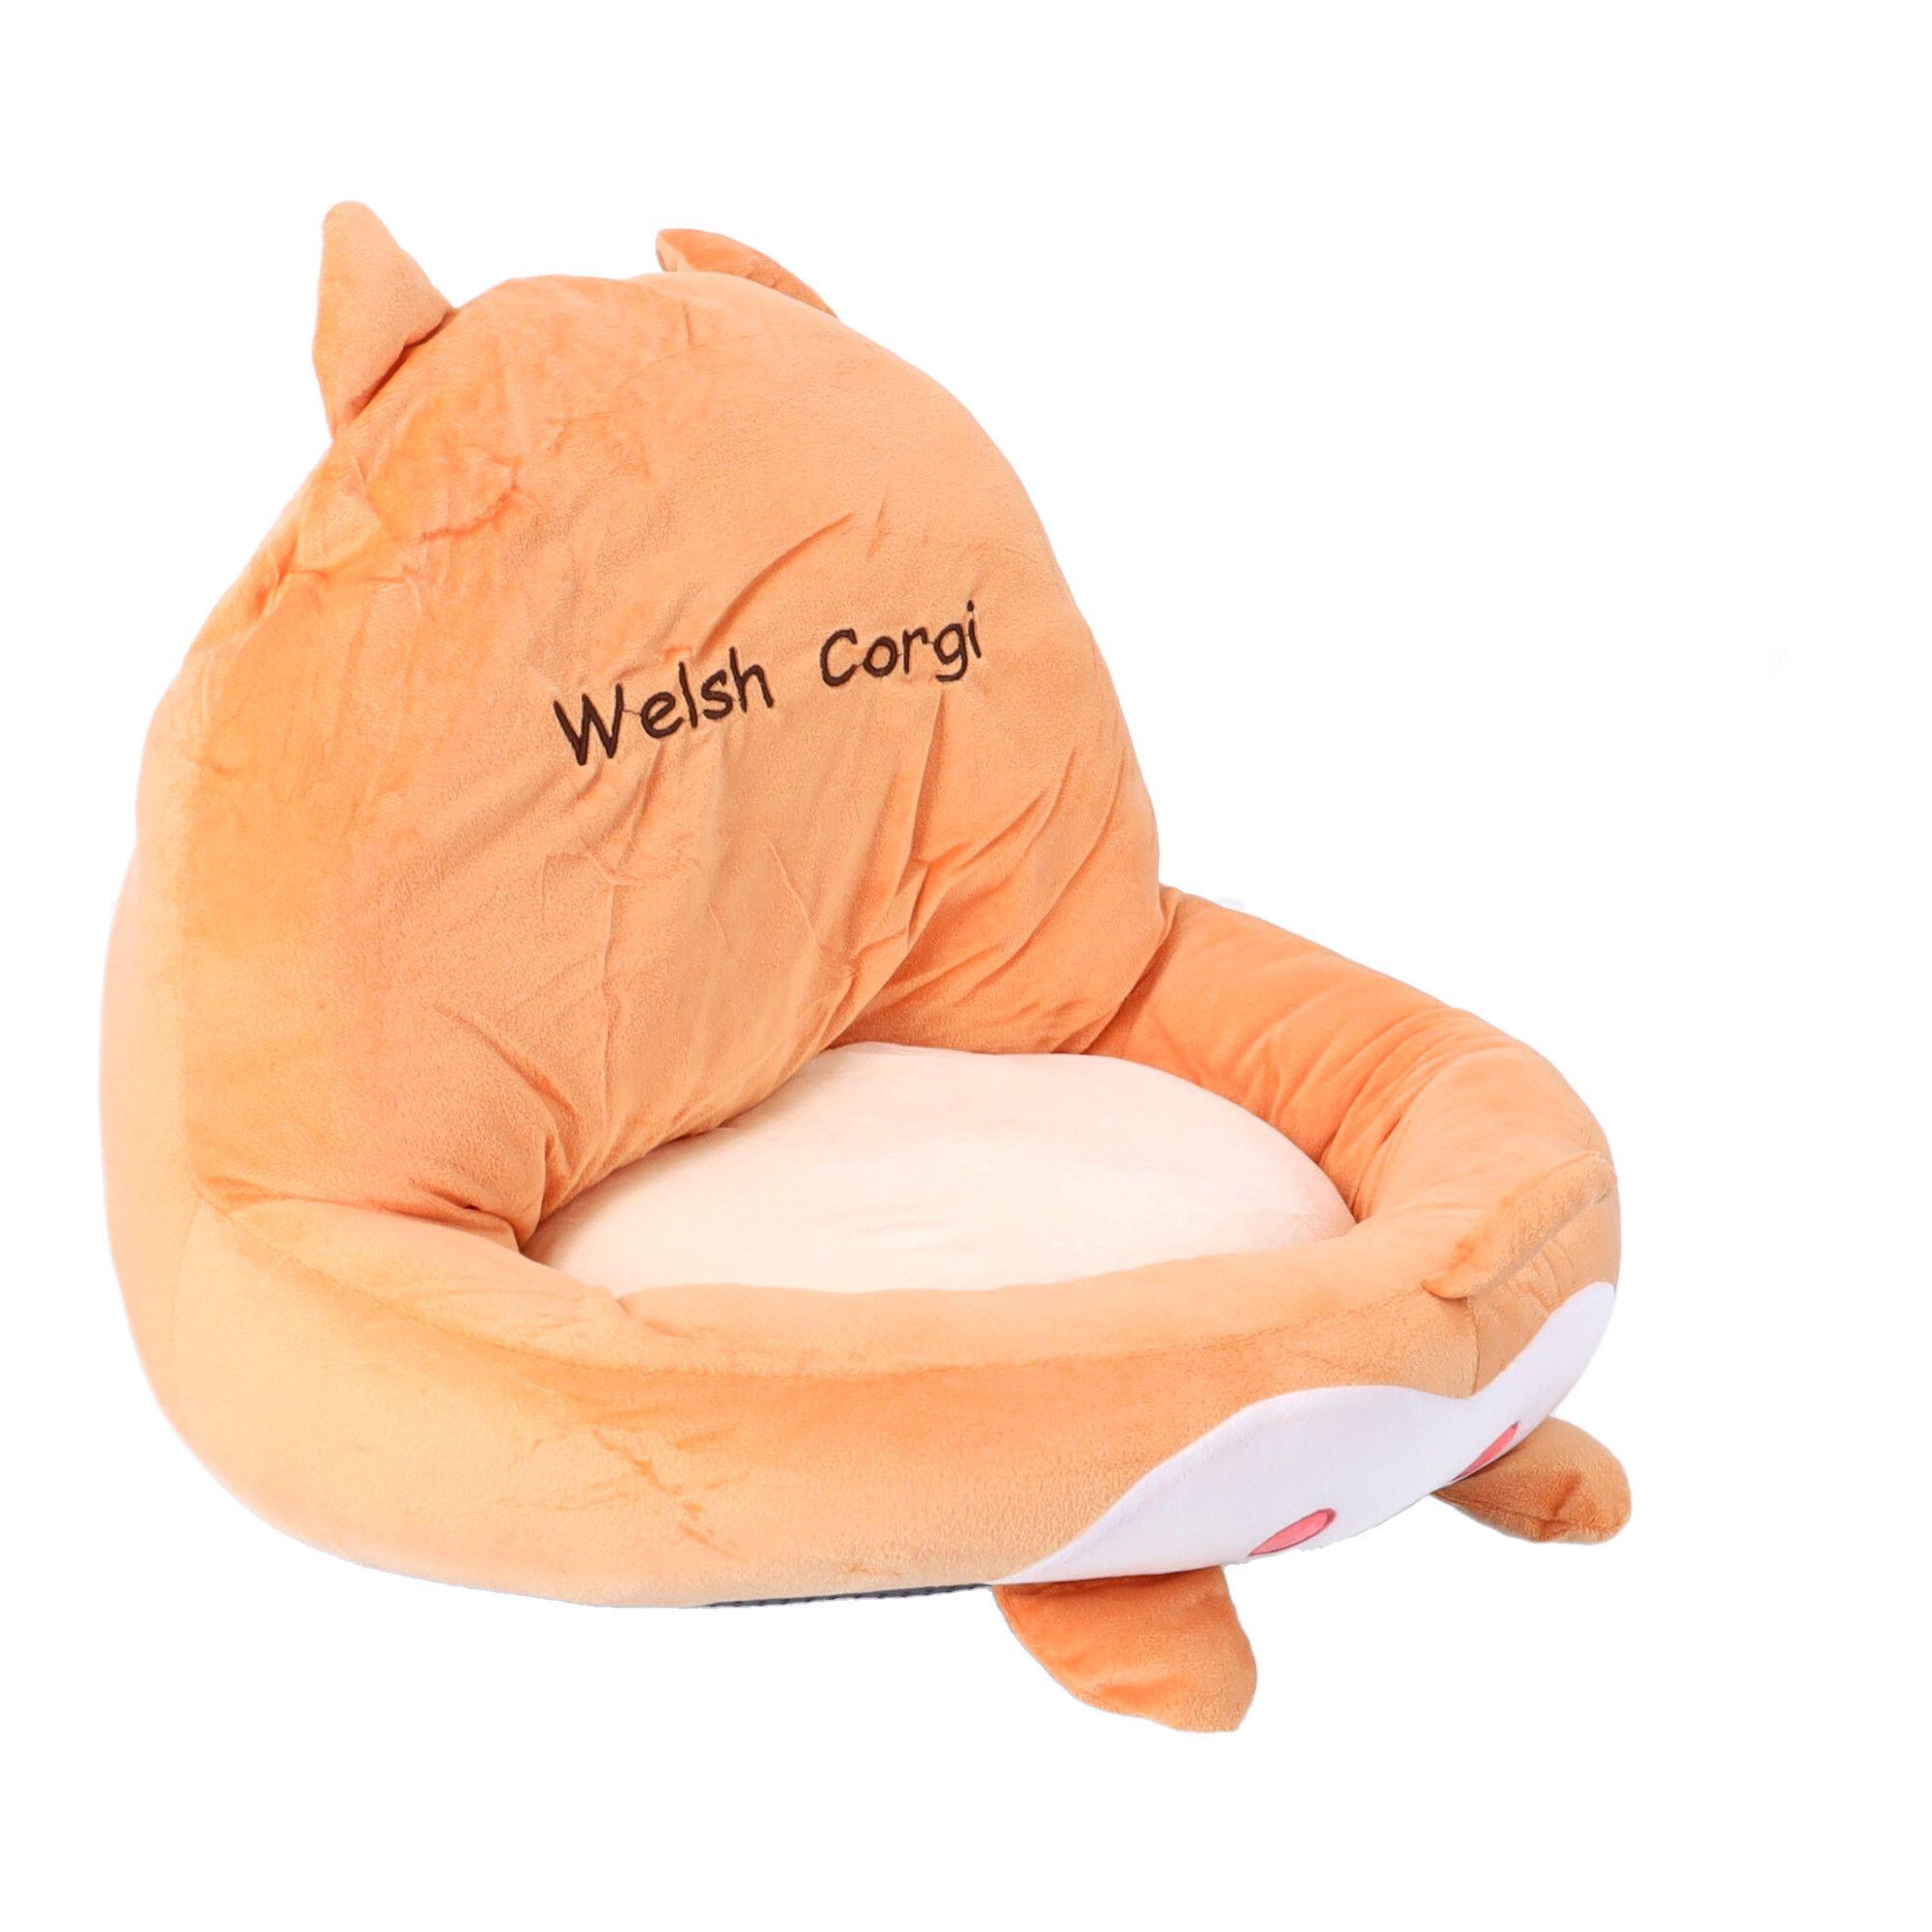 Corgi seating cushion - 46x46 cm